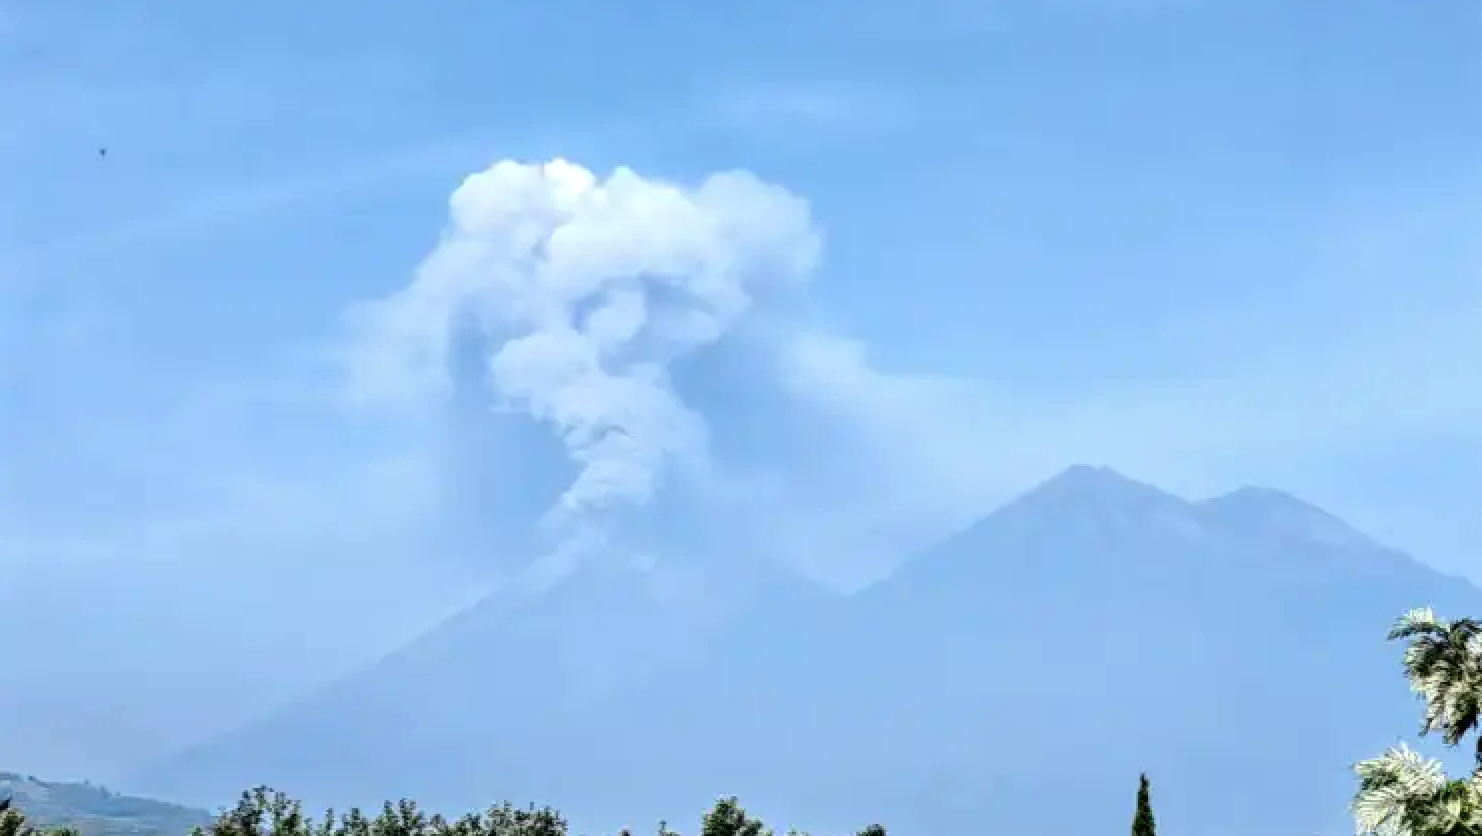 Guatemala: Volcano of Fuego activity increases